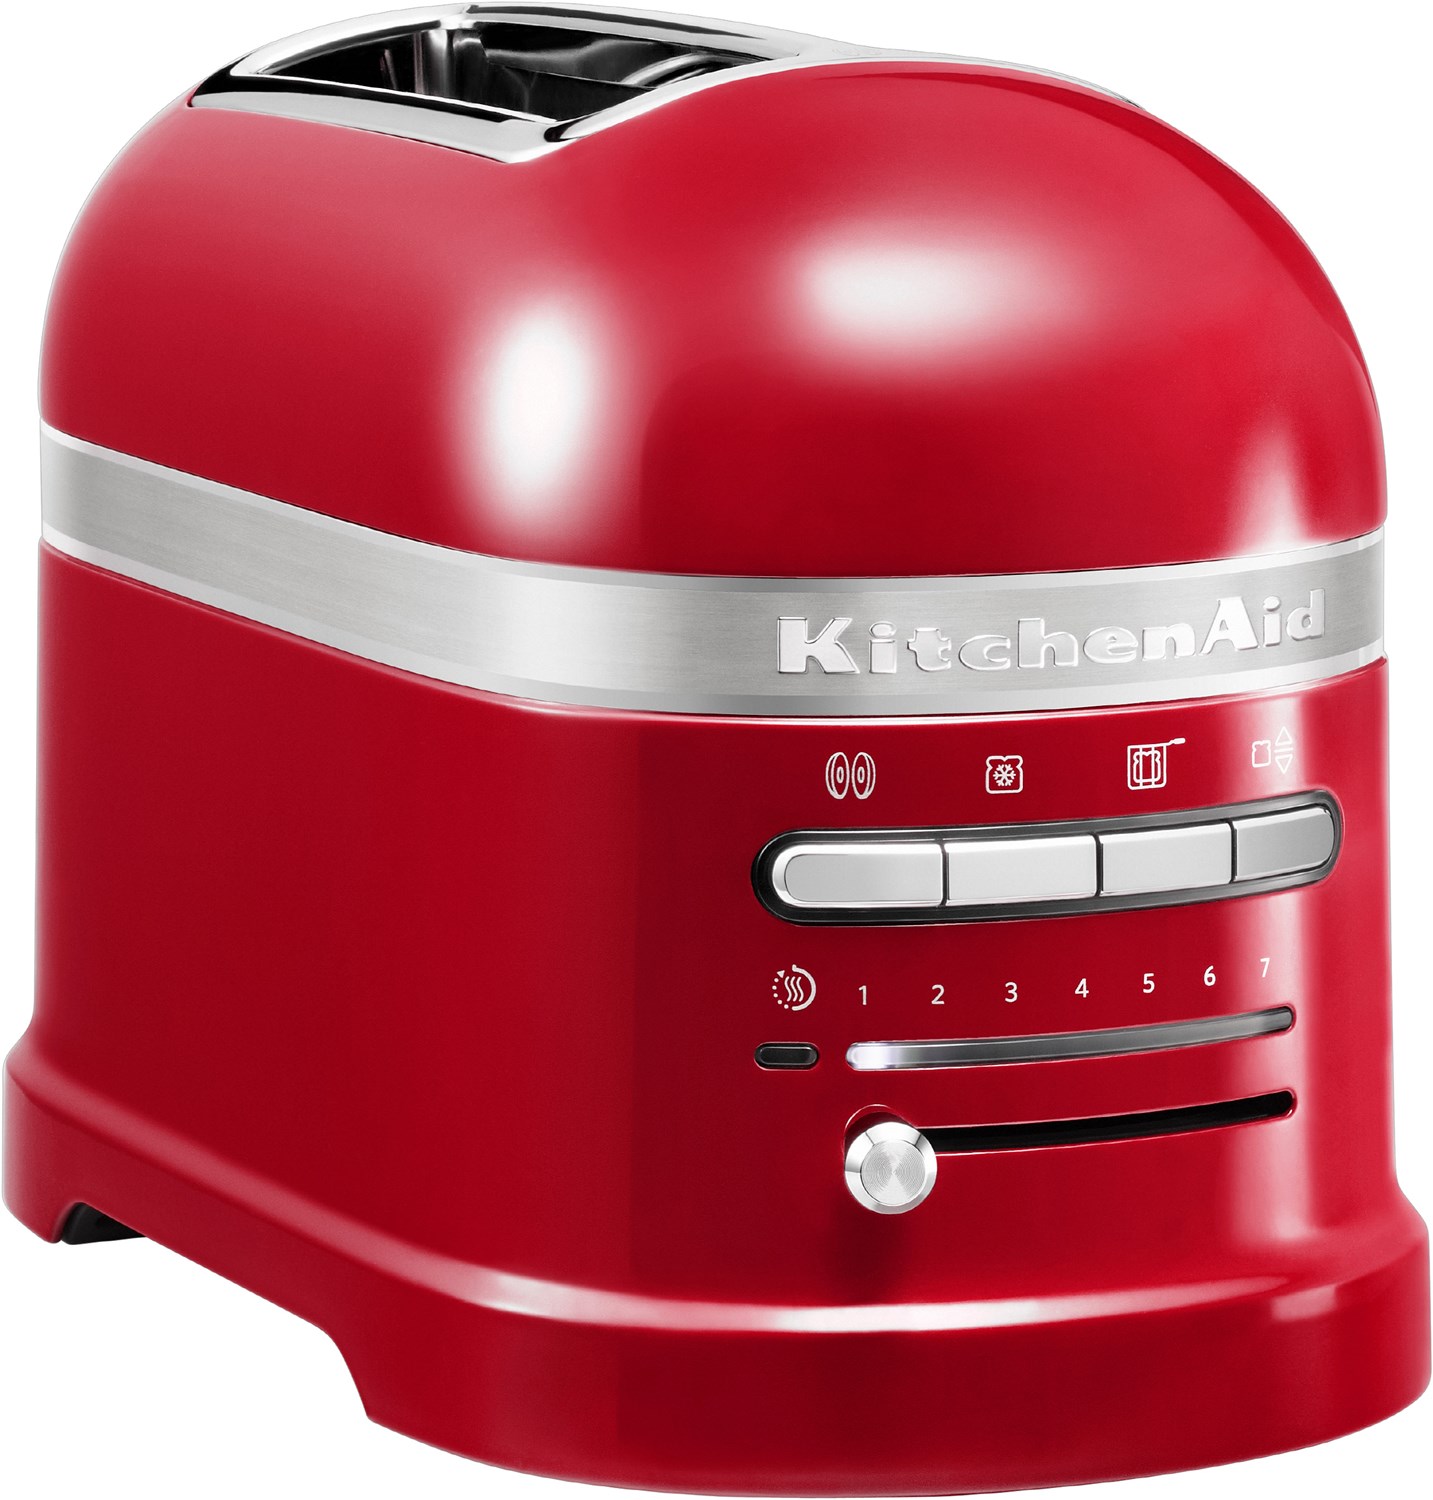 5KMT2204EER Artisan Kompakt-Toaster empire red von KitchenAid